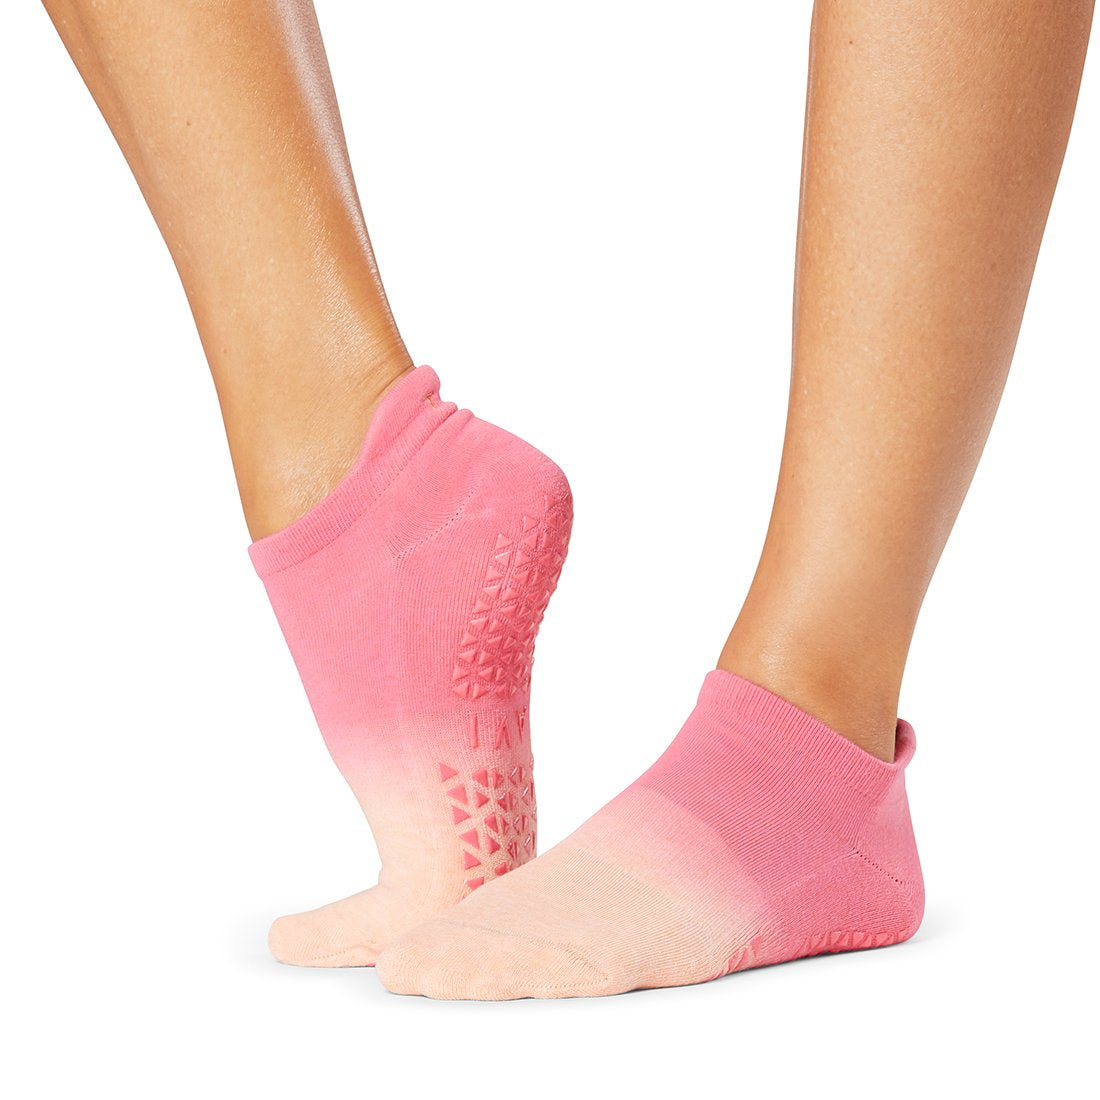 Sticky Be Socks BE BRAVE Grip Socks - Black/Pink on Sale